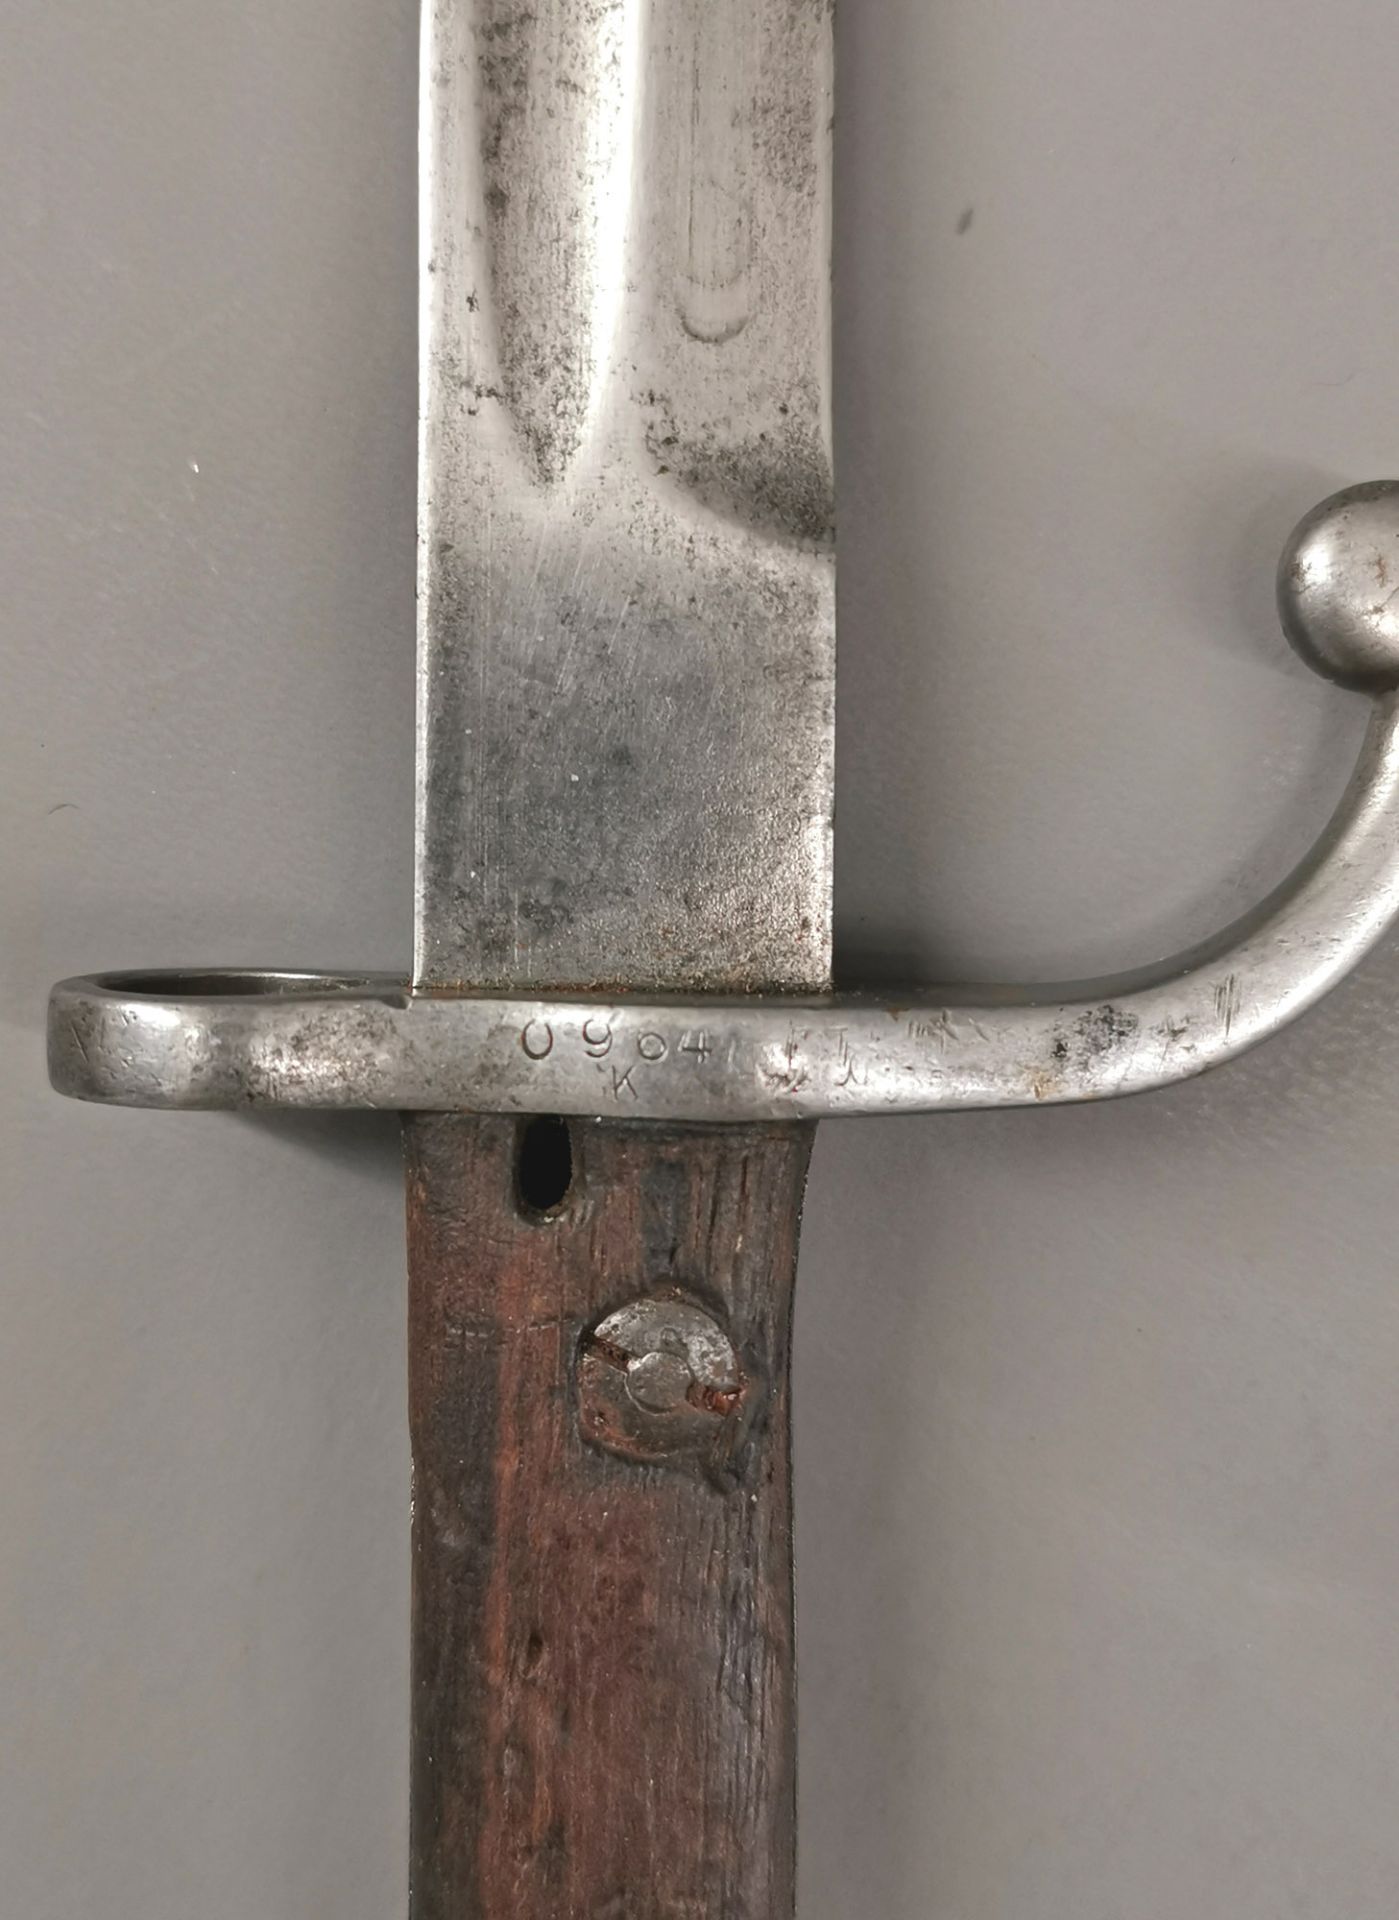 Bajonett M1909 - Image 3 of 3